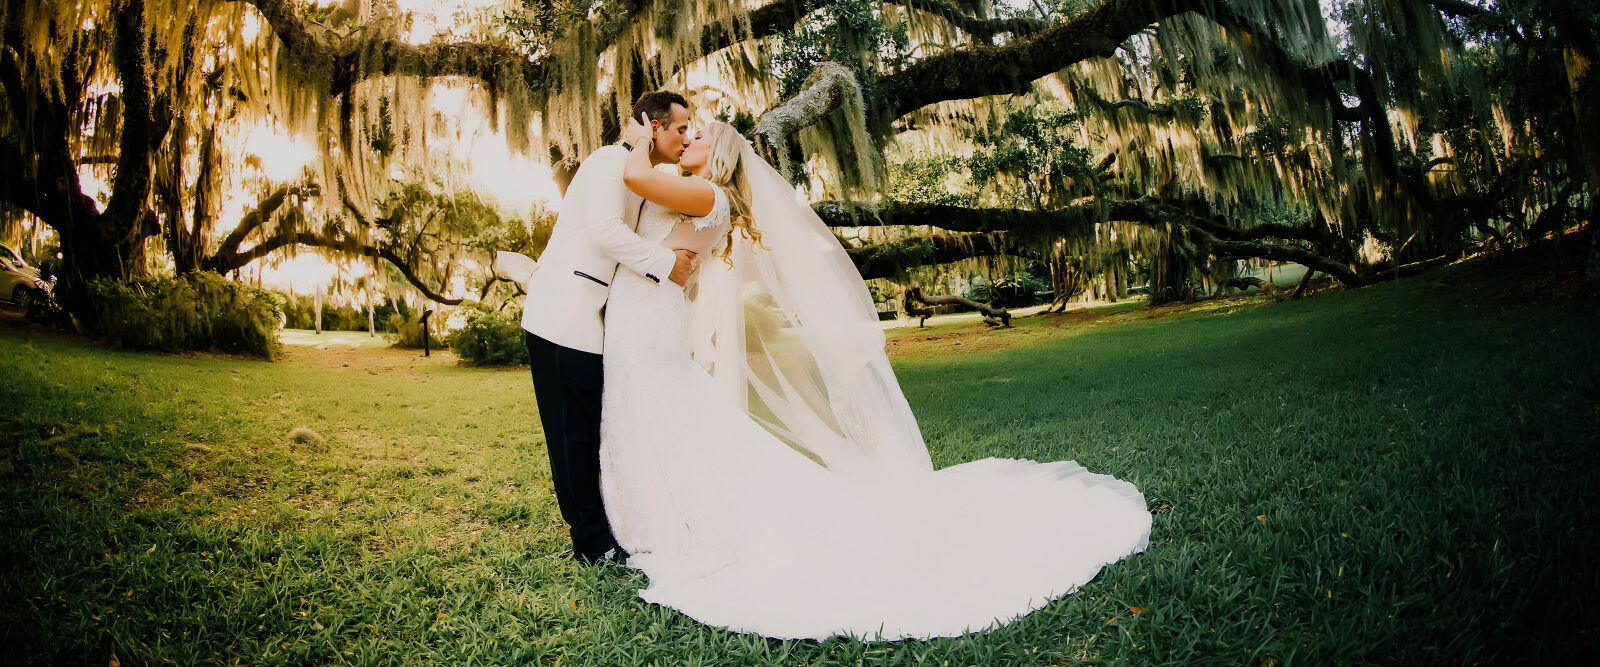 Jacksonville Wedding Photography by Tonya Beaver Photography